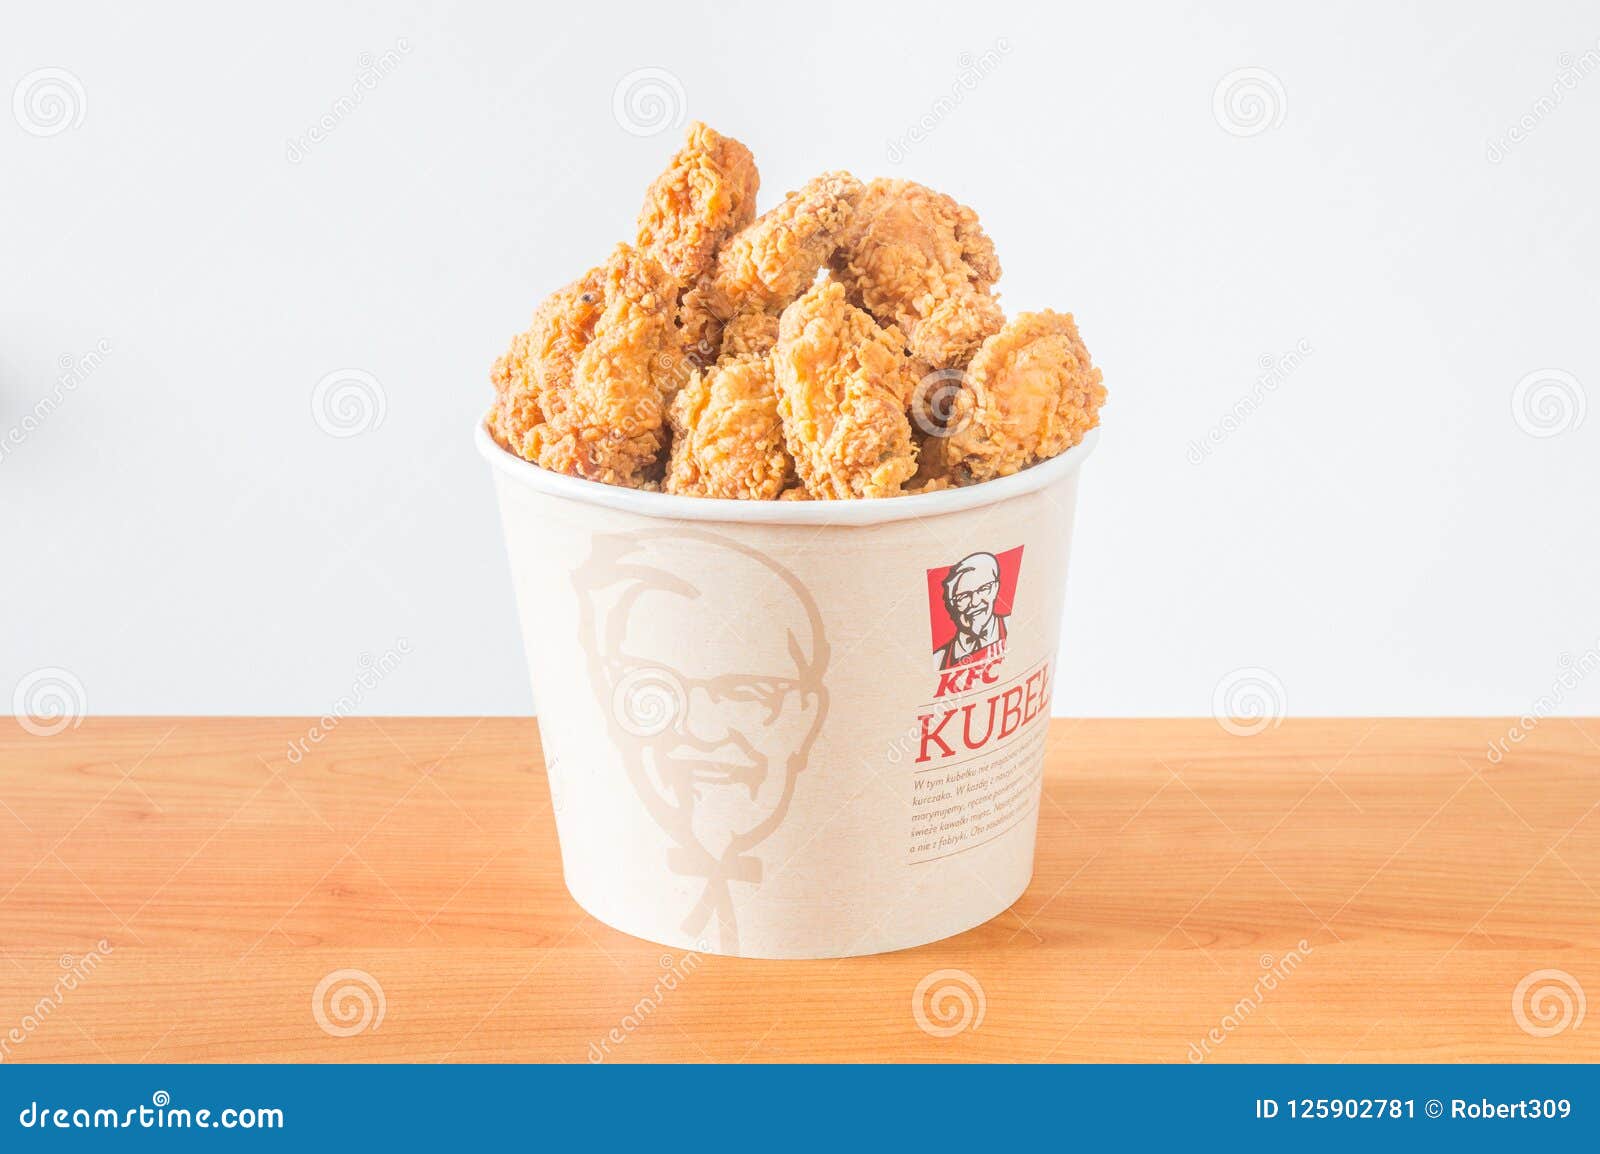 kfc bucket menu prices